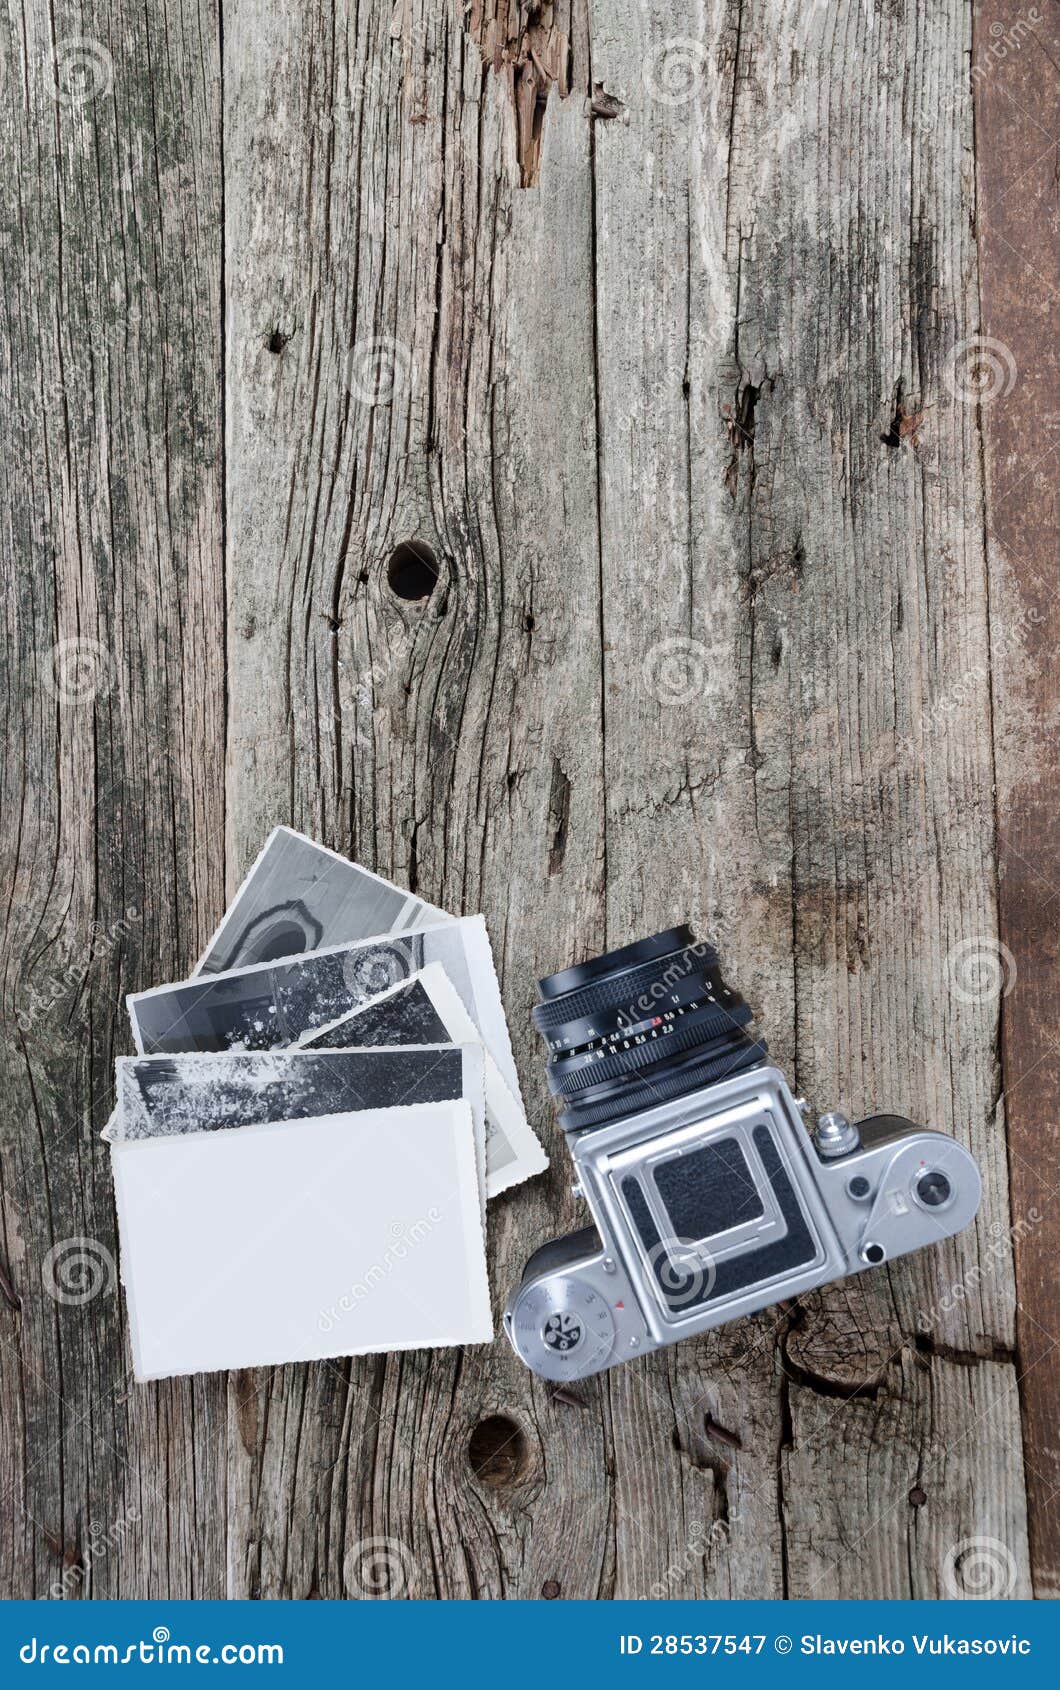 Rocznik fotografii fotografie i kamera. Stare kamery, czerni i bielu fotografie na drewnianym tle. Miejsce dla twój fotografii na pustym fotografia papierze. Odbitkowa przestrzeń na drewnianym tle.